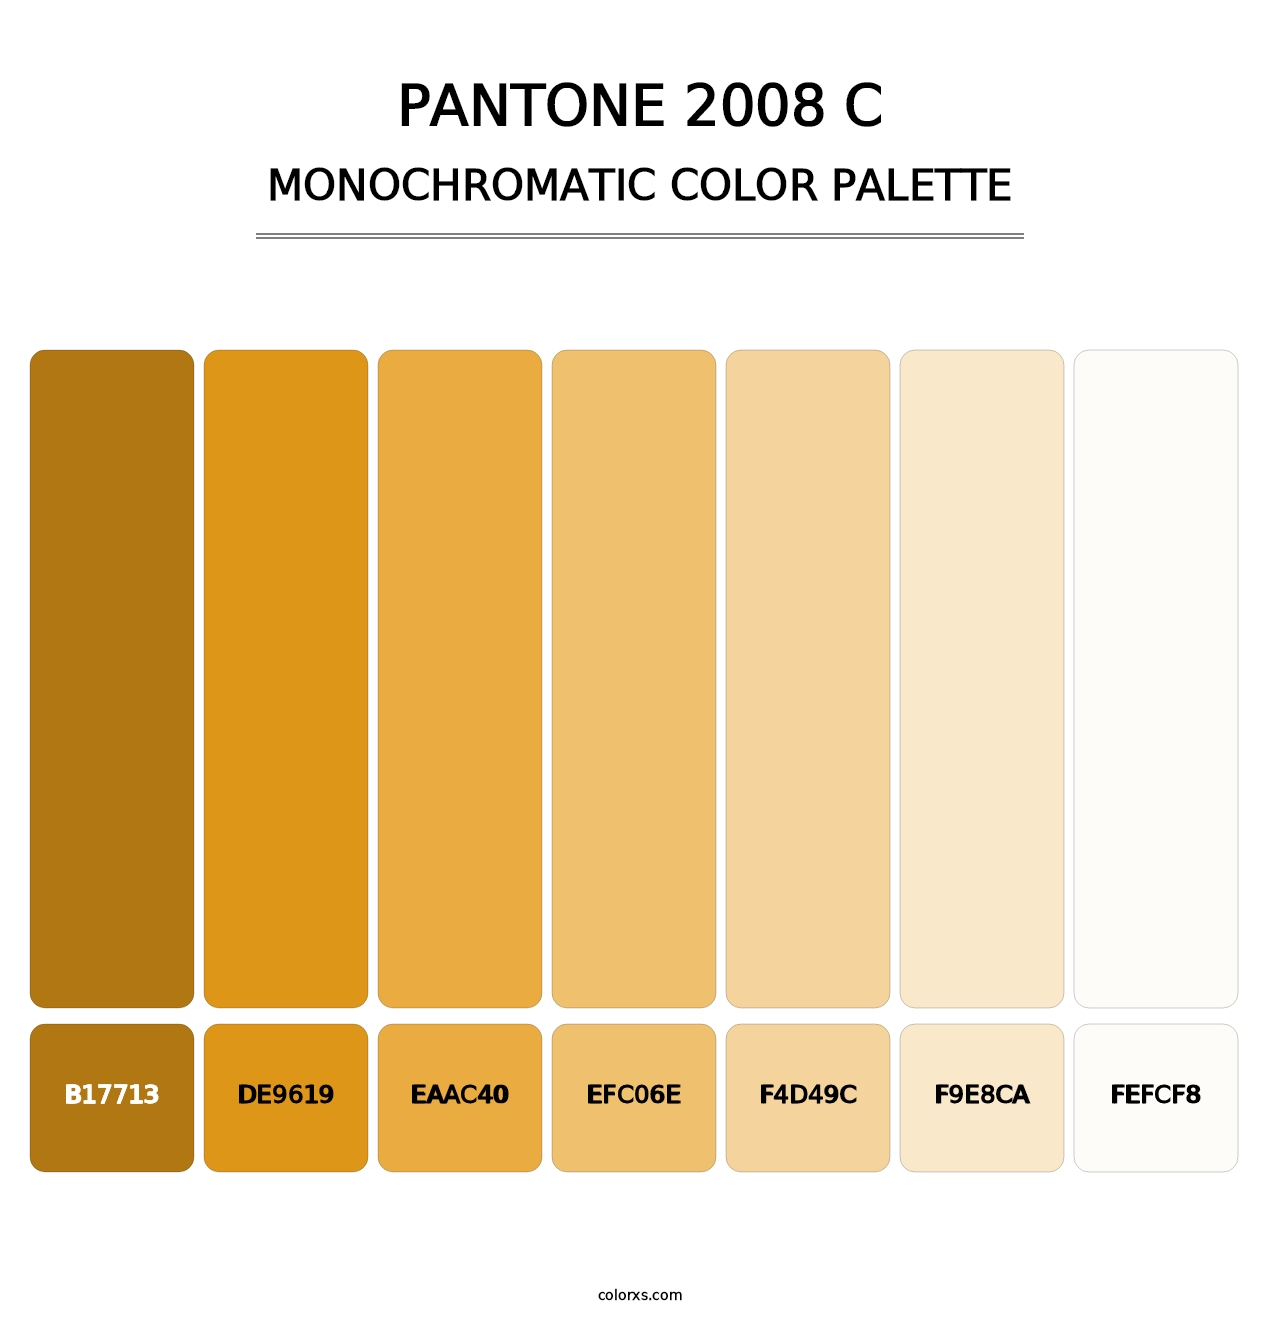 PANTONE 2008 C - Monochromatic Color Palette